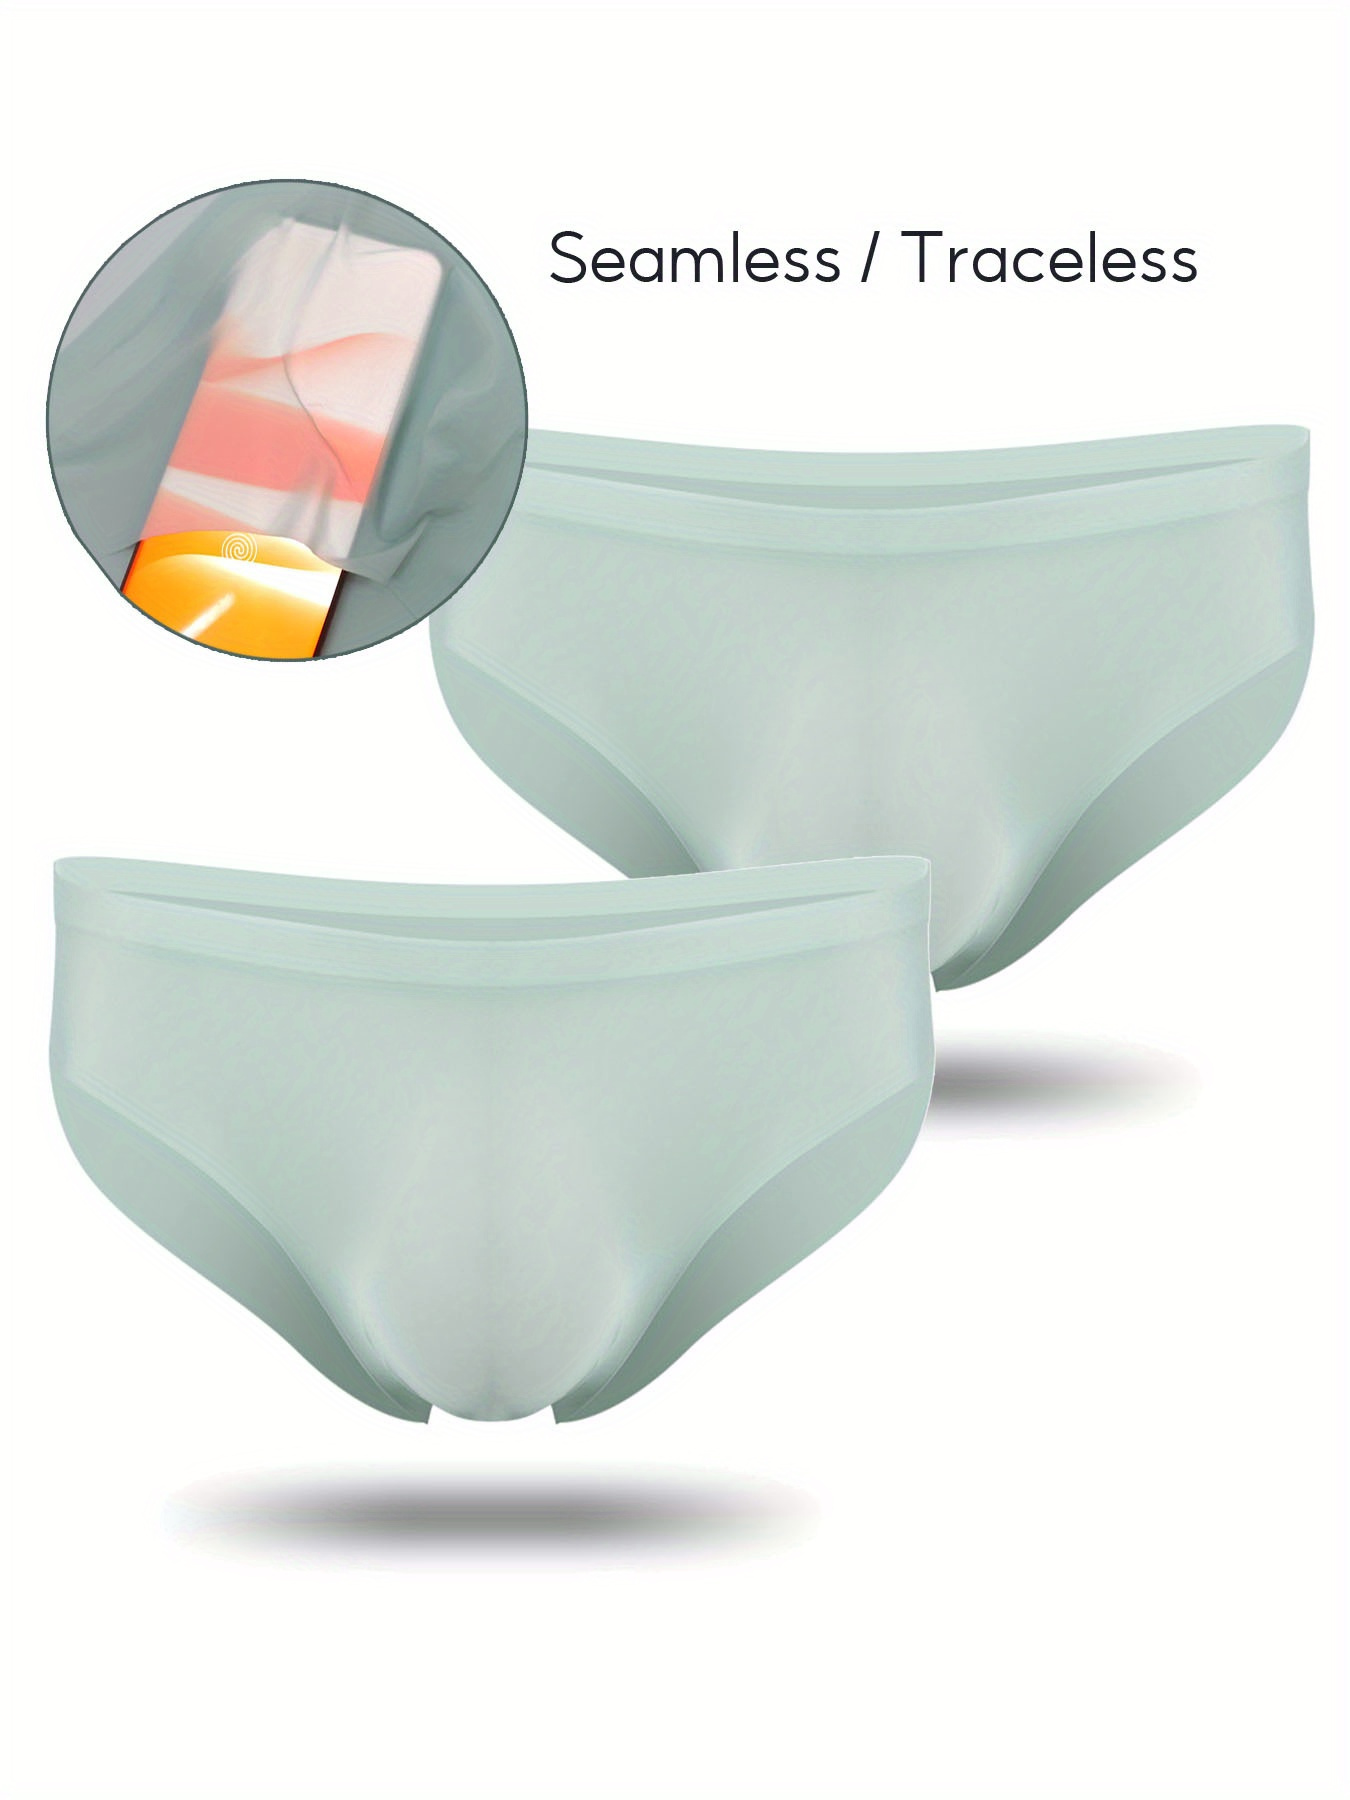 Mens Seamless Briefs Underpants Underwear Panties